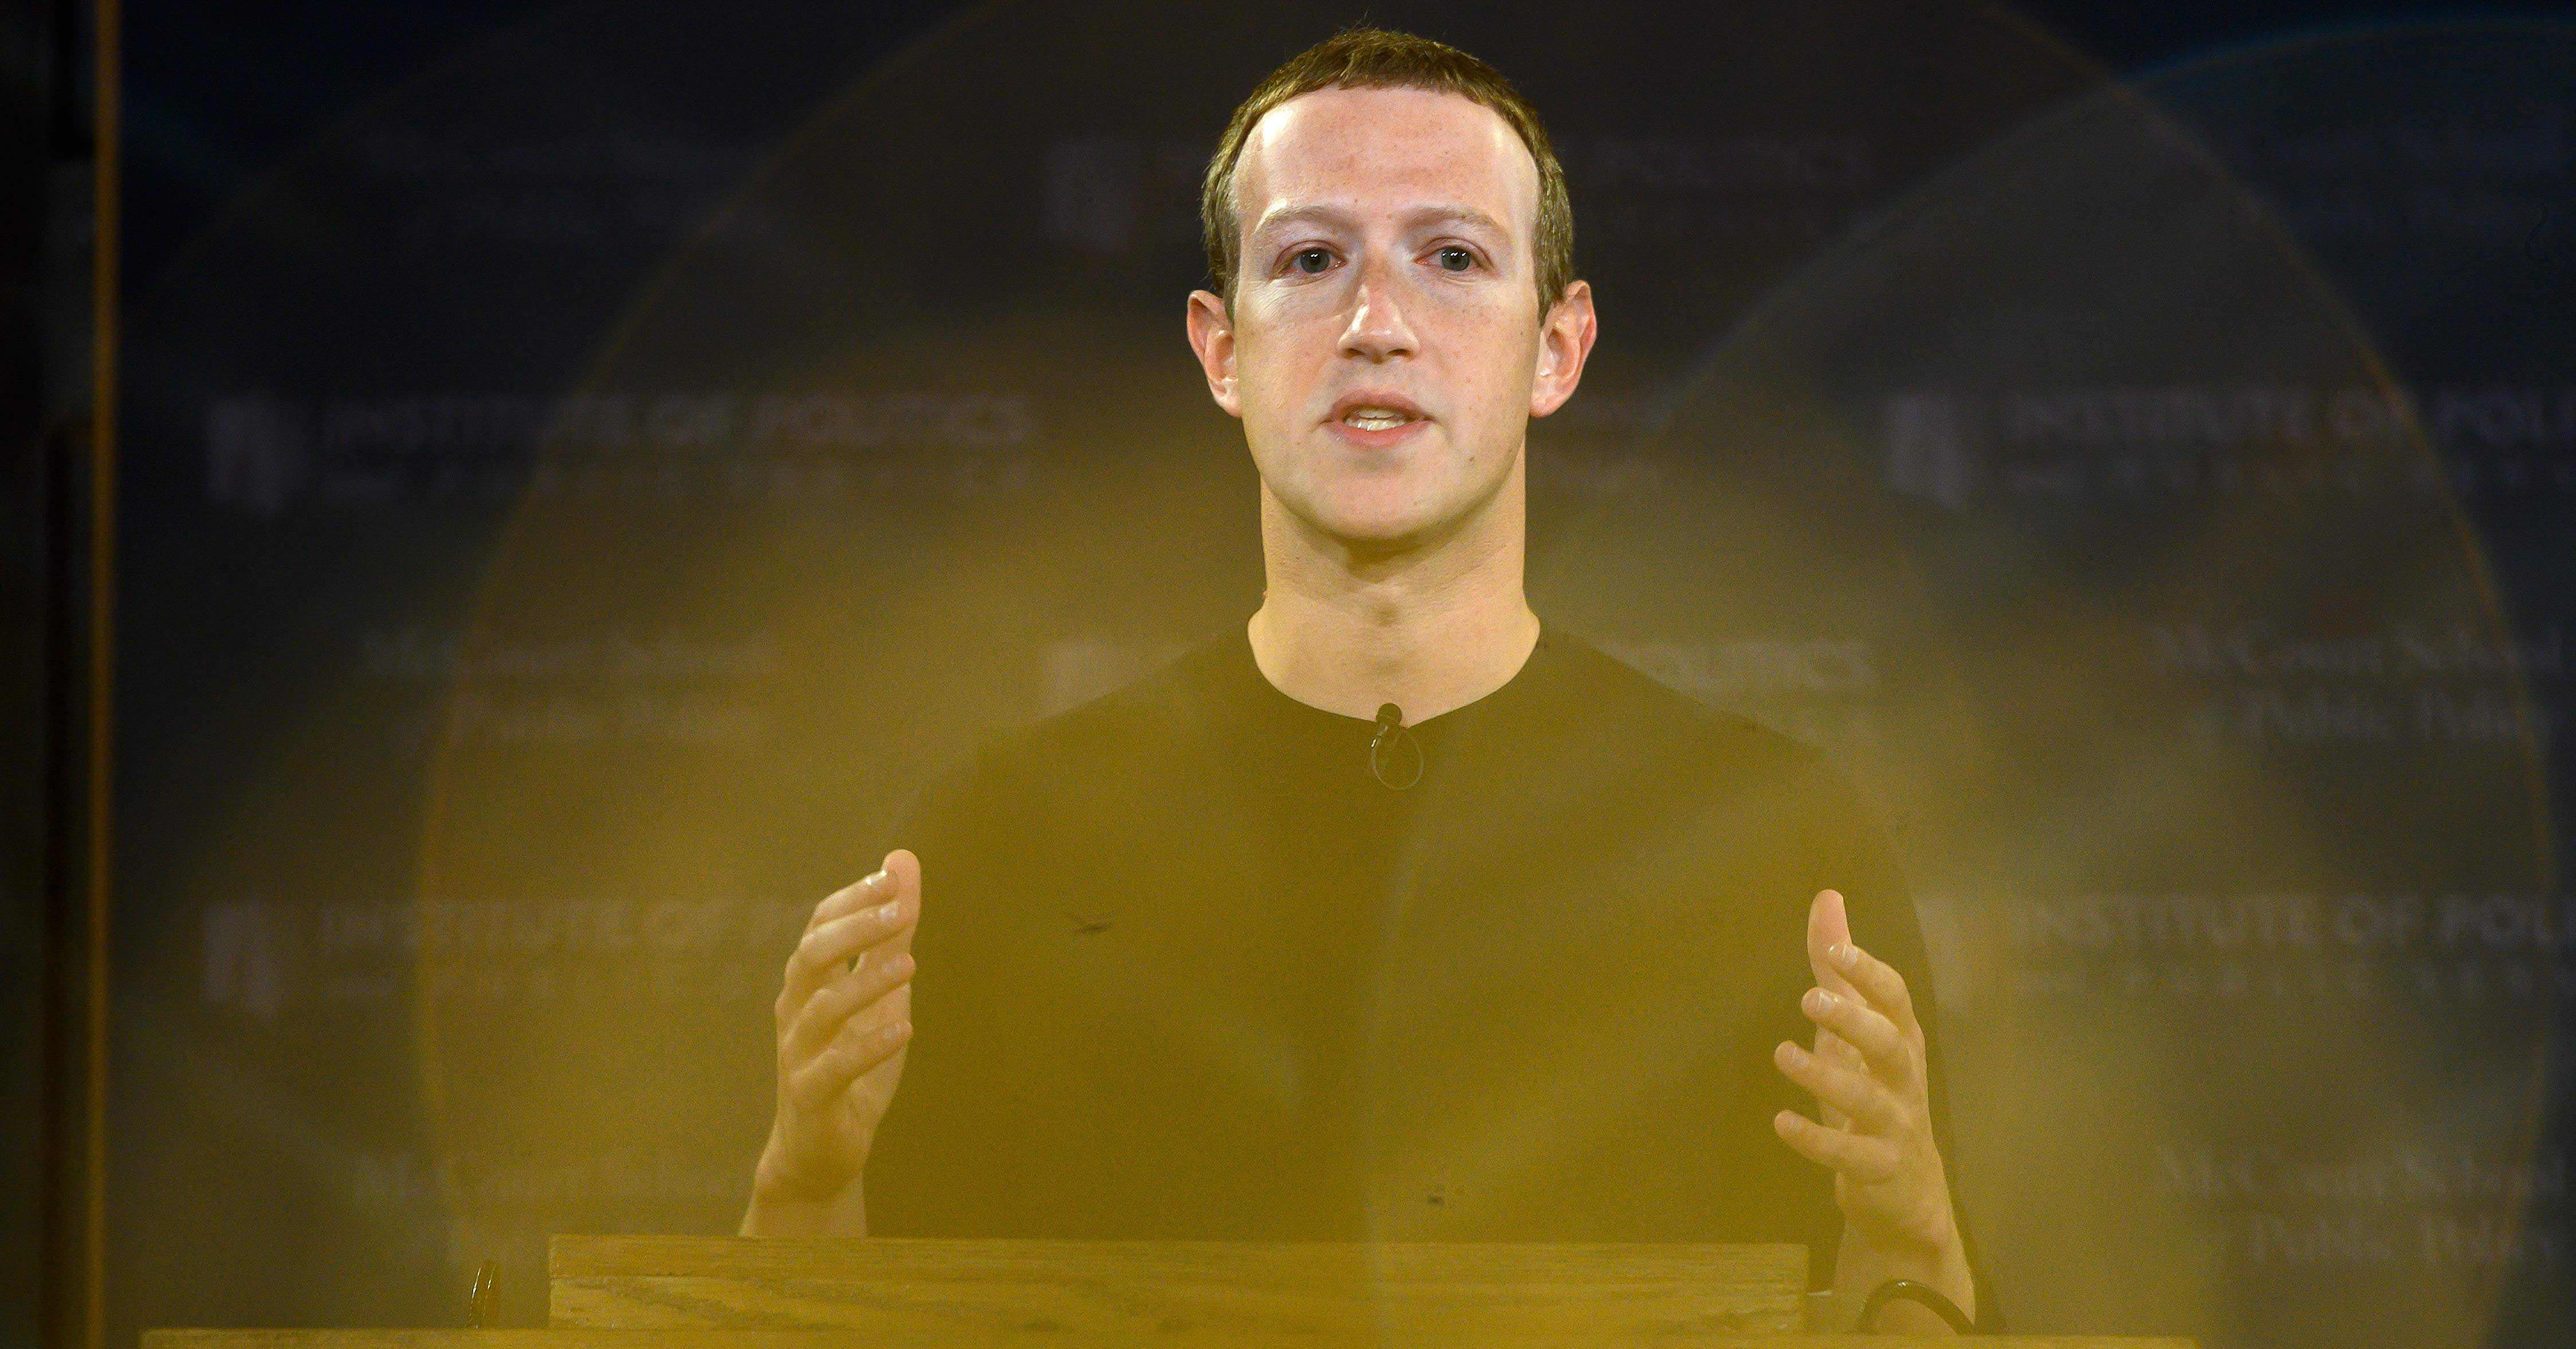 Analyysi: Internetin rosvovaltio Facebook pakenee mainettaan metaversumiin uuden identiteetin turvin